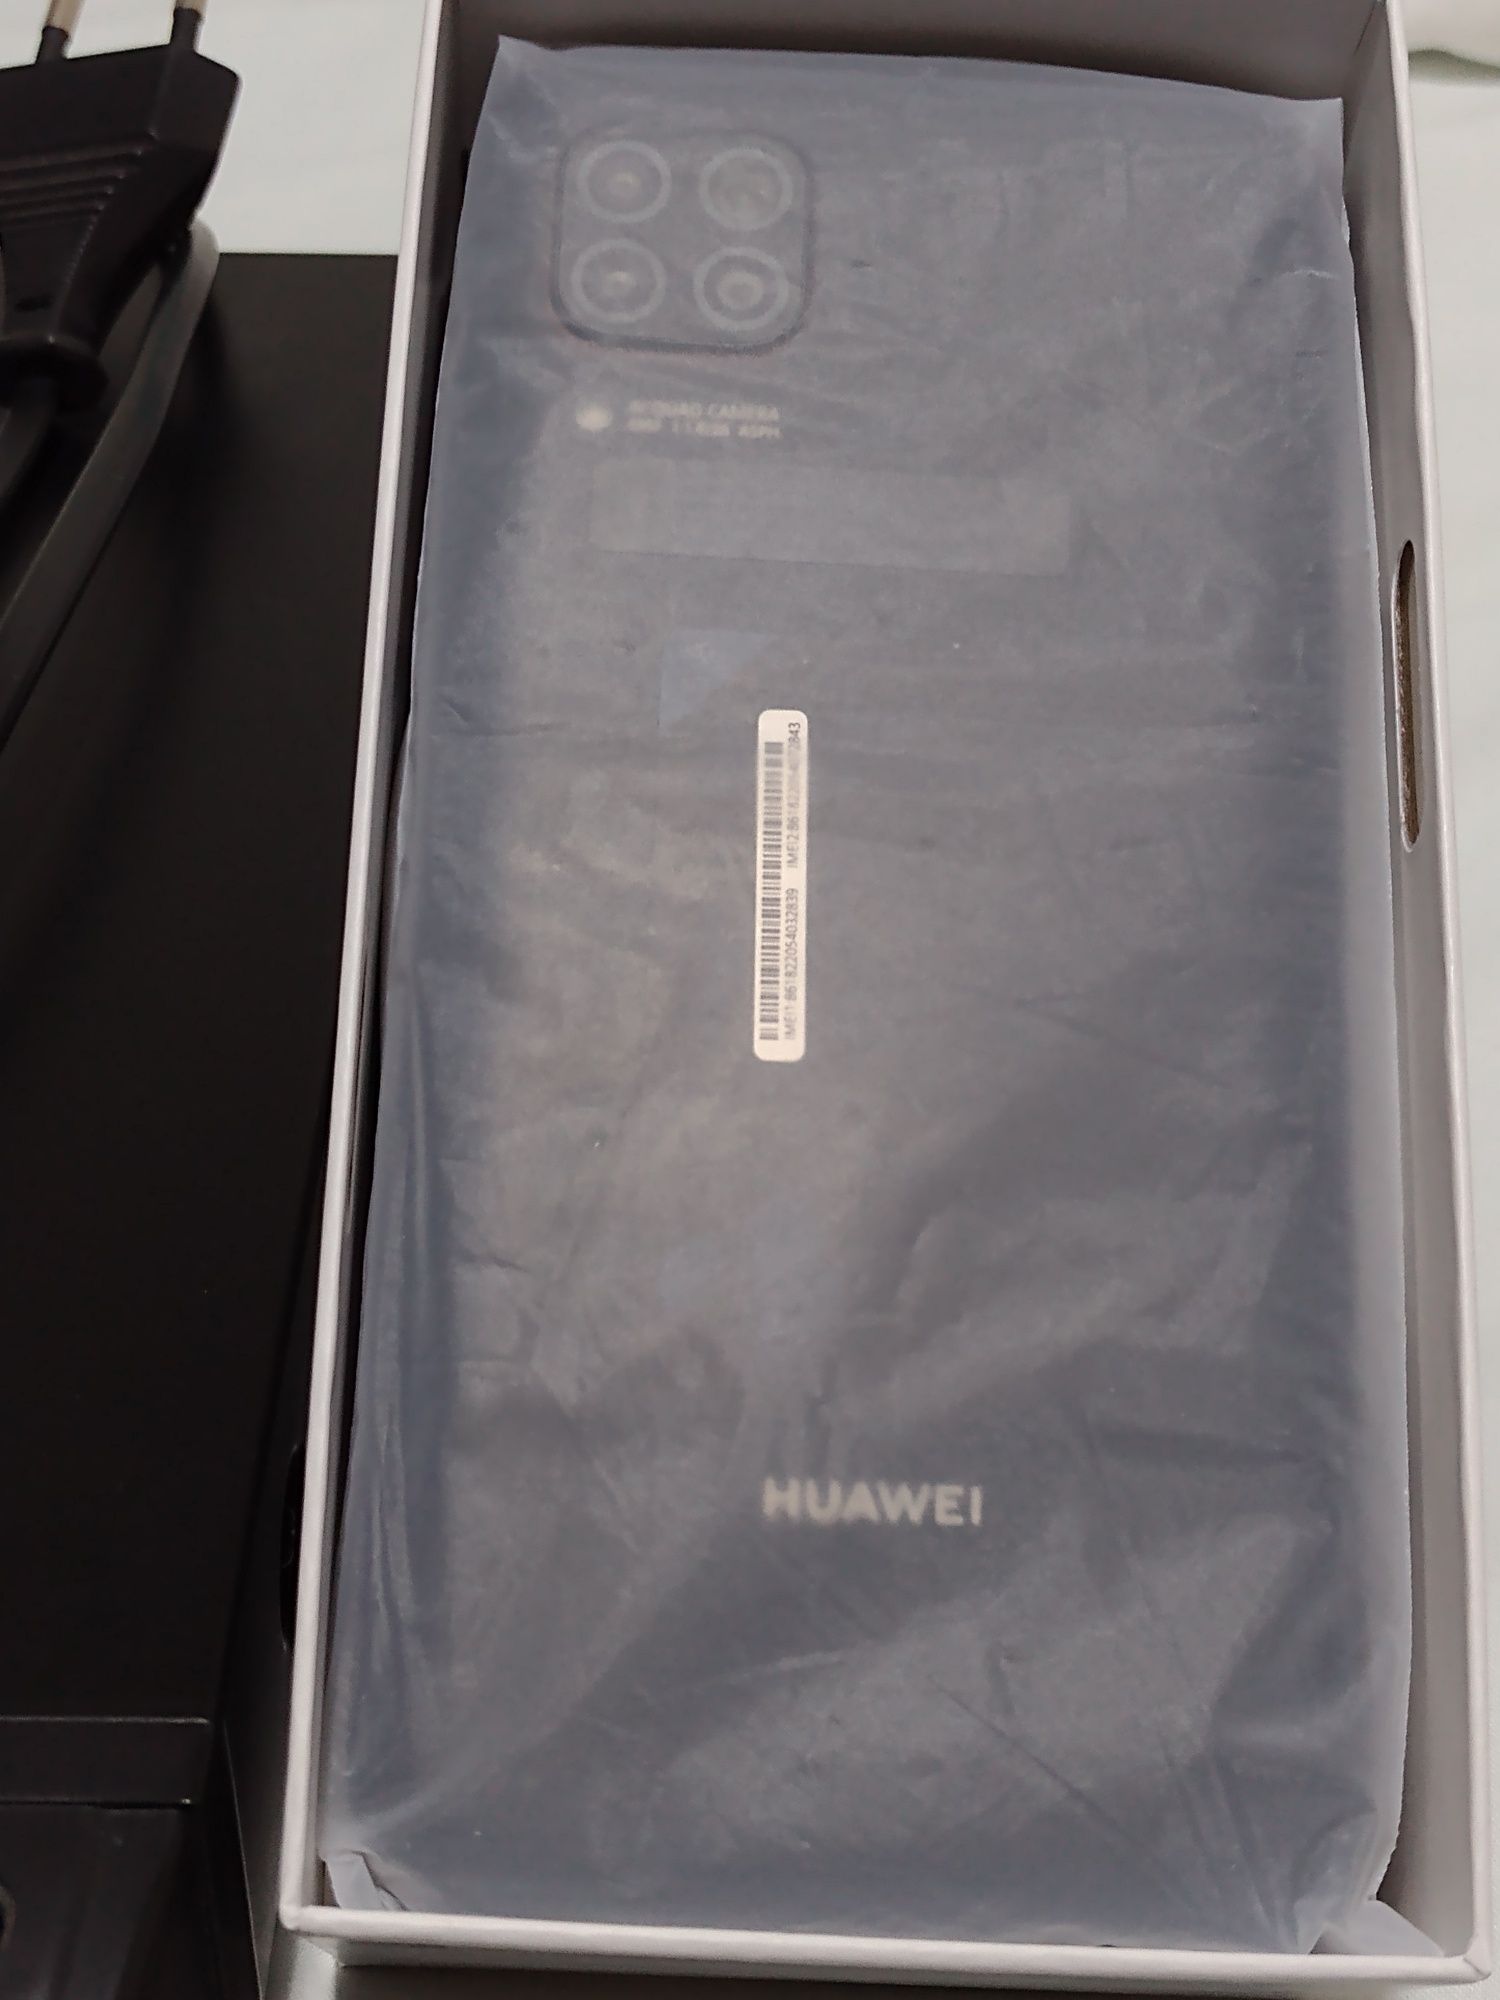 Huawei p40 lite 6 GB ram 128GB rom. Baixa de preço oportunidade.